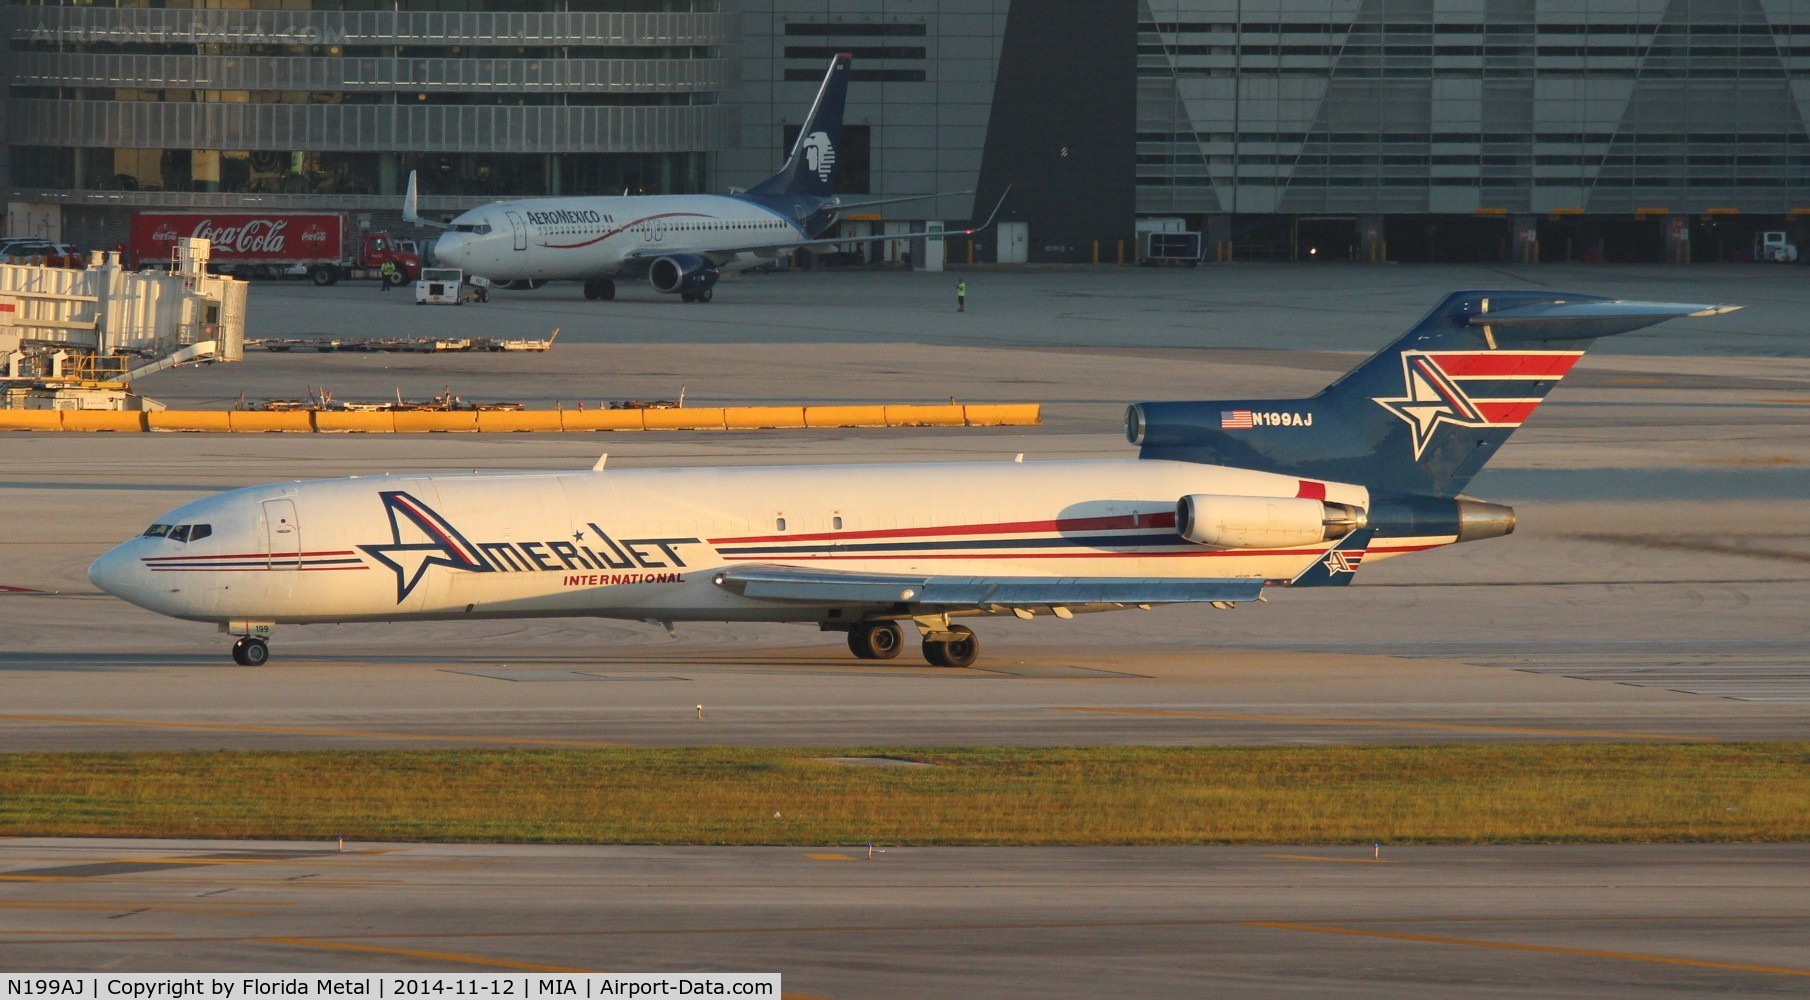 N199AJ, 1979 Boeing 727-2F9 C/N 21426, Amerijet 727